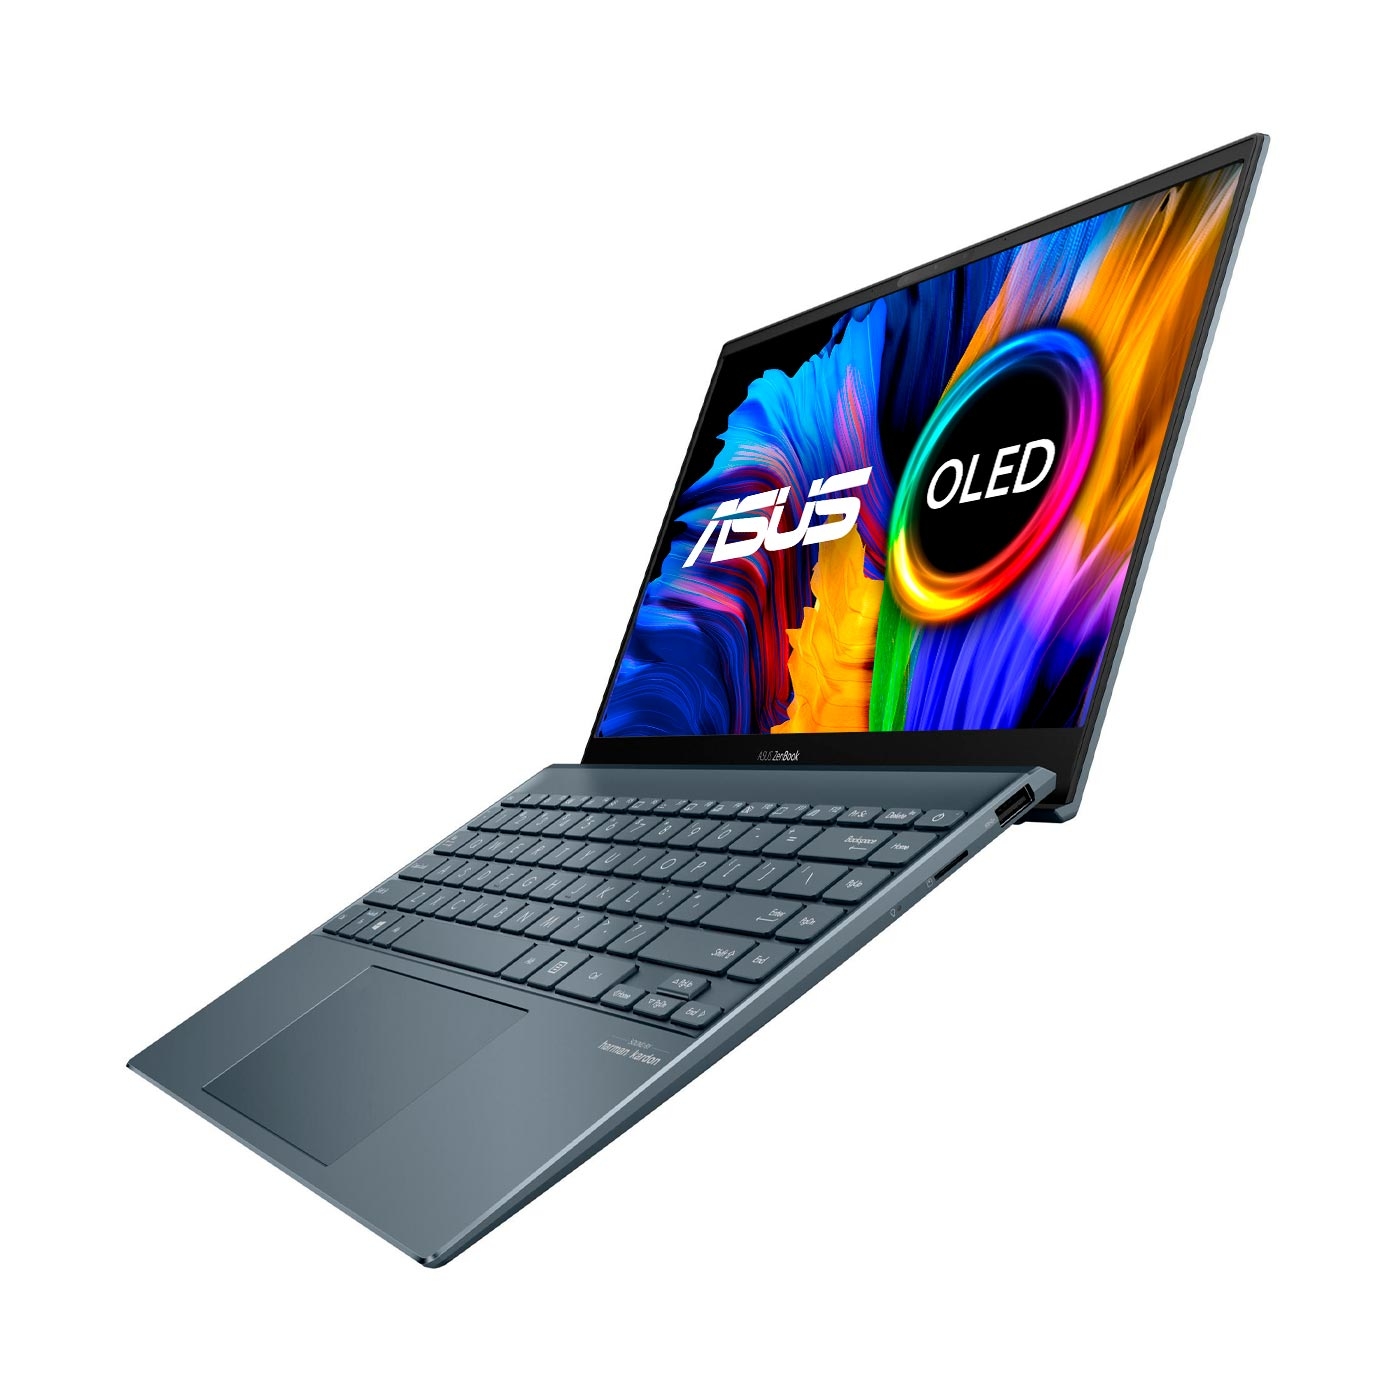 Computador Portátil ASUS Zenbook OLED 13,3" Pulgadas UX325JA Intel Core I5 - RAM 8GB - Disco SSD 512 GB - Gris + Obsequios